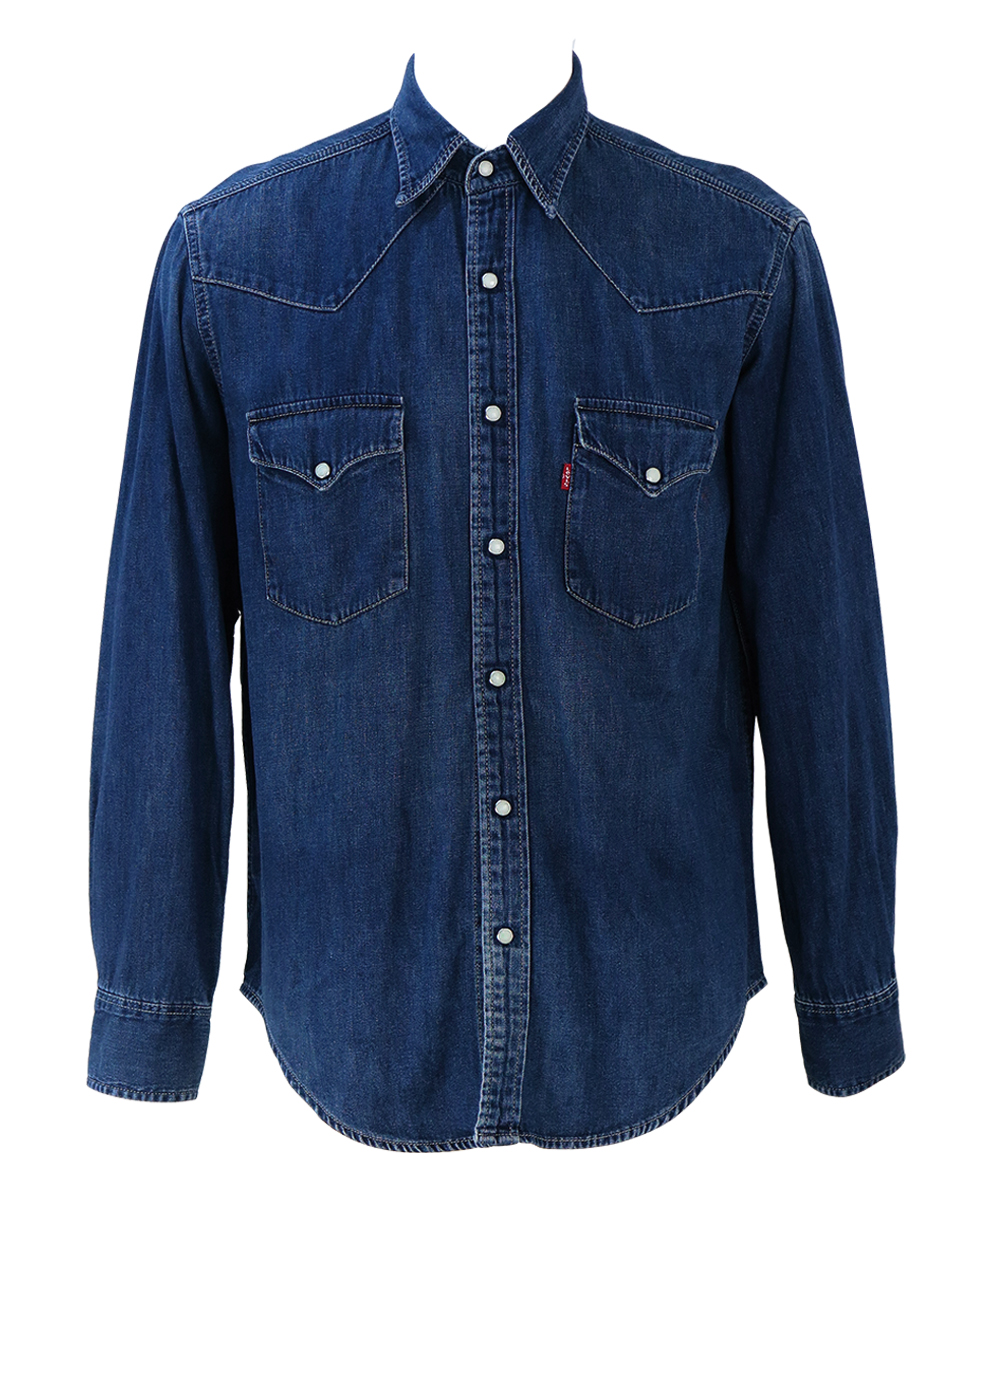 post_titleLevi's Barstow Western Standard Blue Denim Shirt - M/L | Reign  Vintage